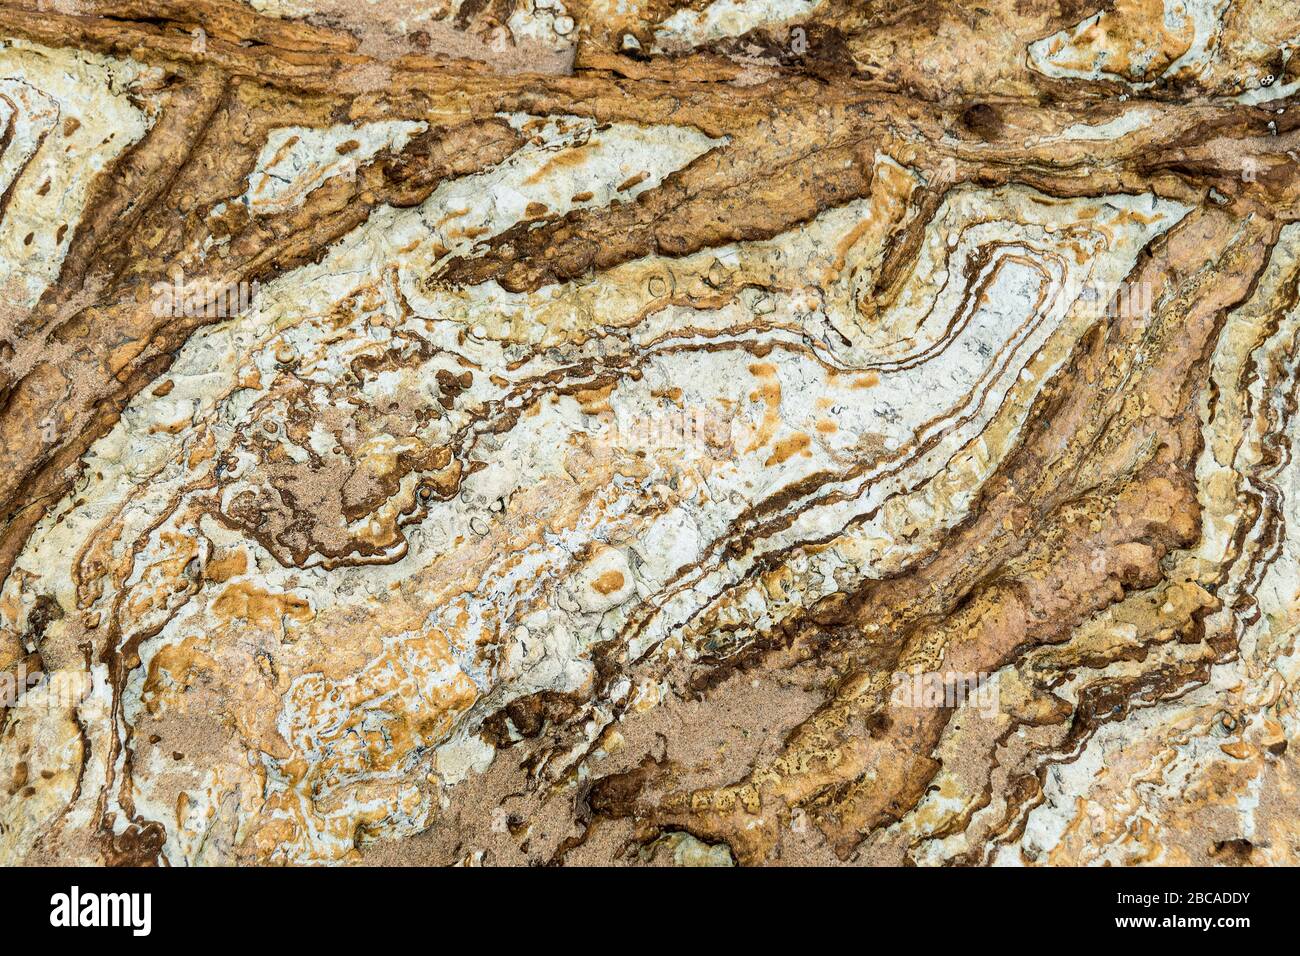 Spain, north coast, Cantabria, Canallave, Parque Natural de Las Dunas de Liencres, sediment layers Stock Photo